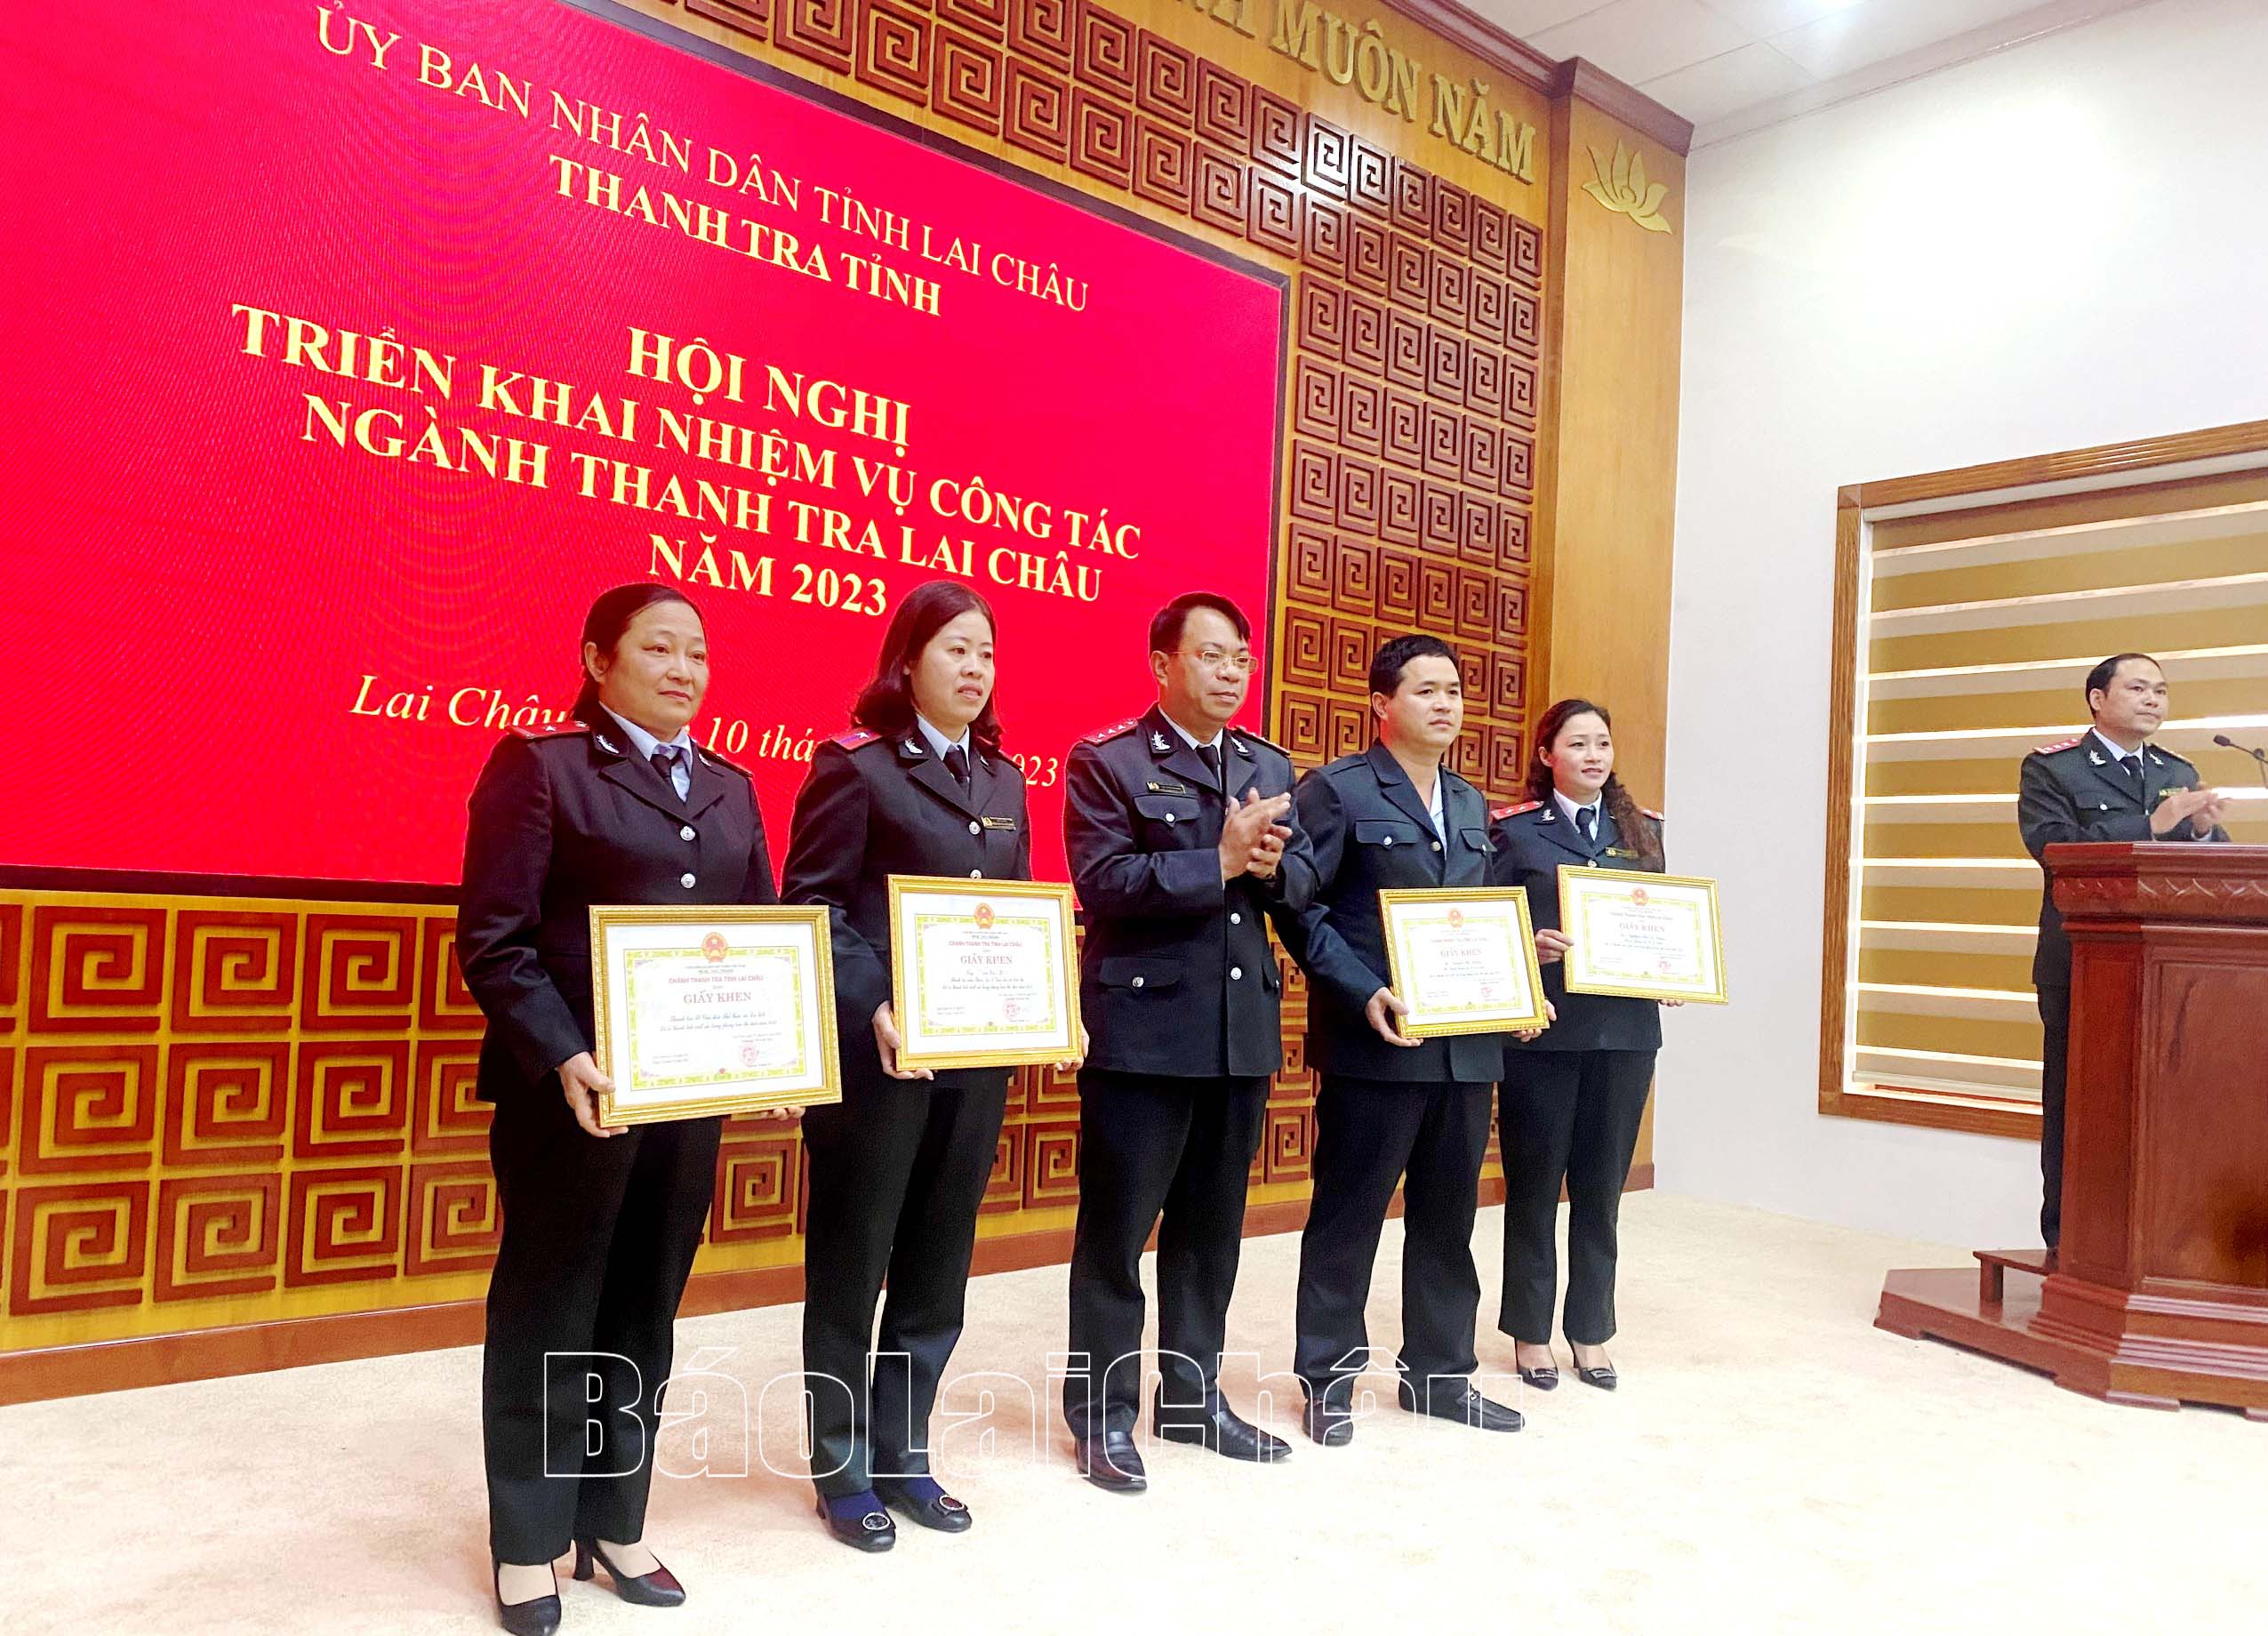 Đồng chí Lò Văn Nhung - Phó Chánh Thanh tra tỉnh trao giấy khen cho các cá nhân.